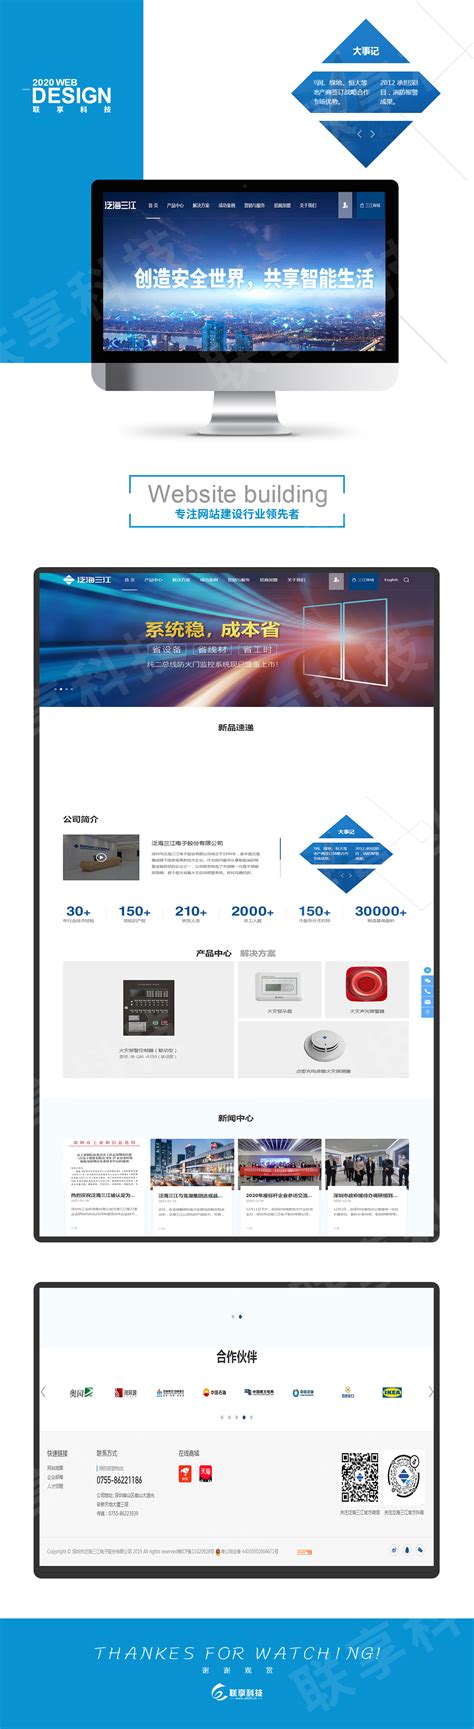 深圳市泛海三江电子股份有限公司-联享懂营销的专业网站设计制作公司